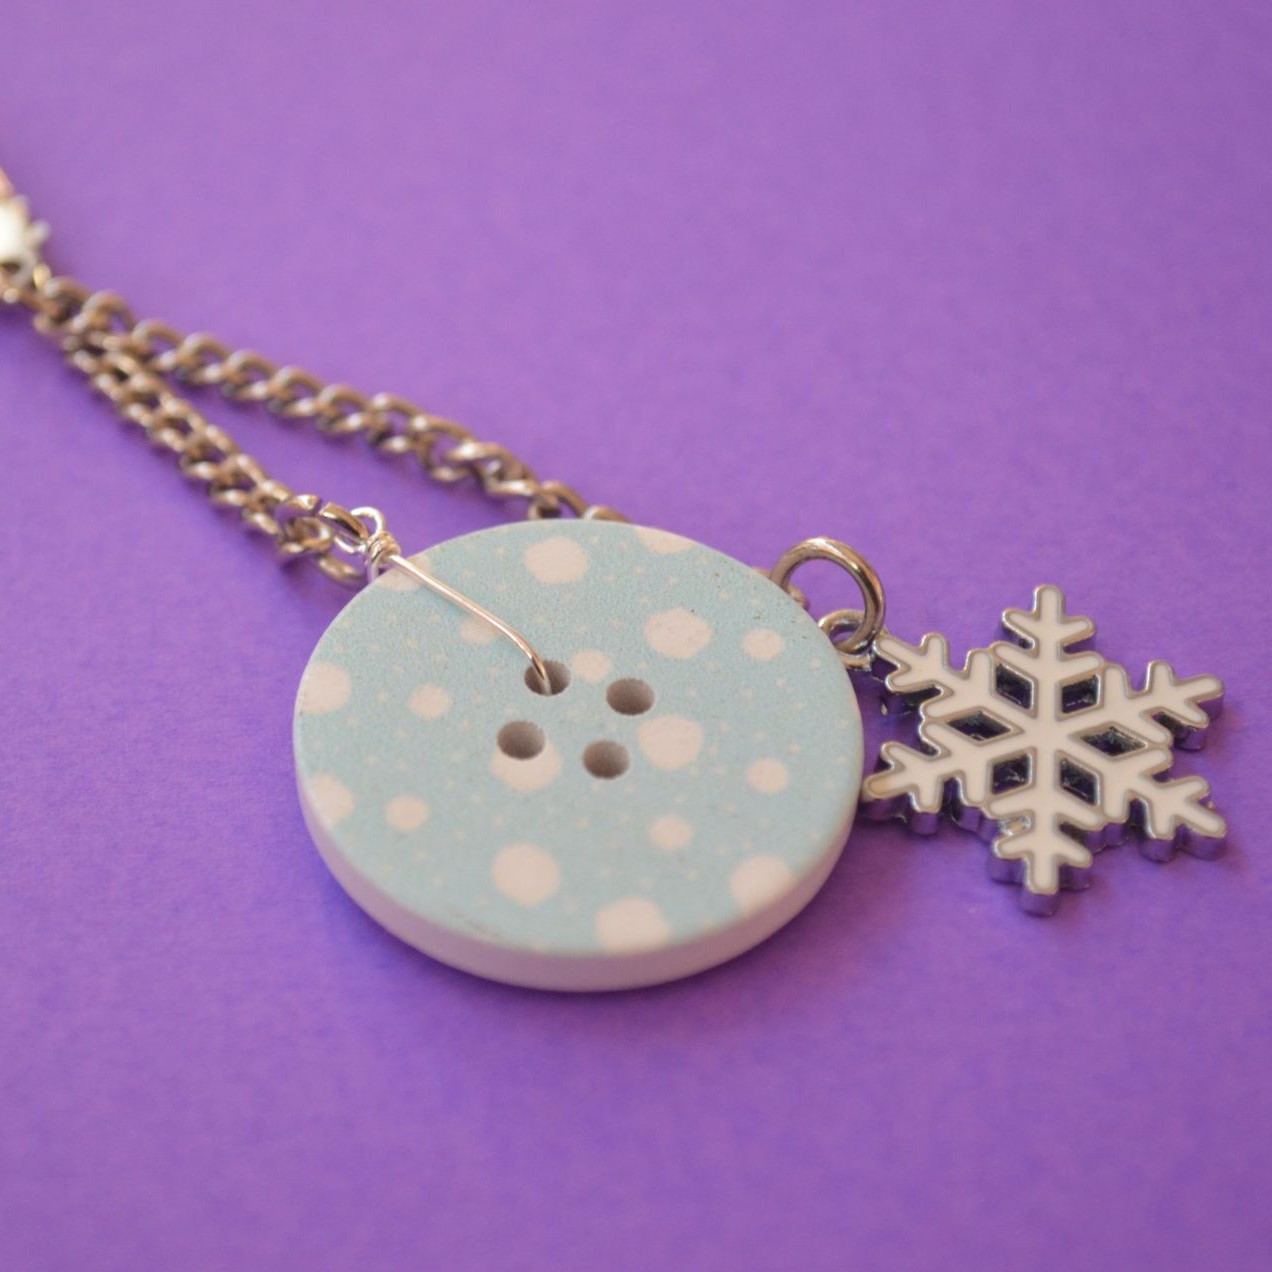 Snowflake Christmas Single Button Bag Charm Keyring